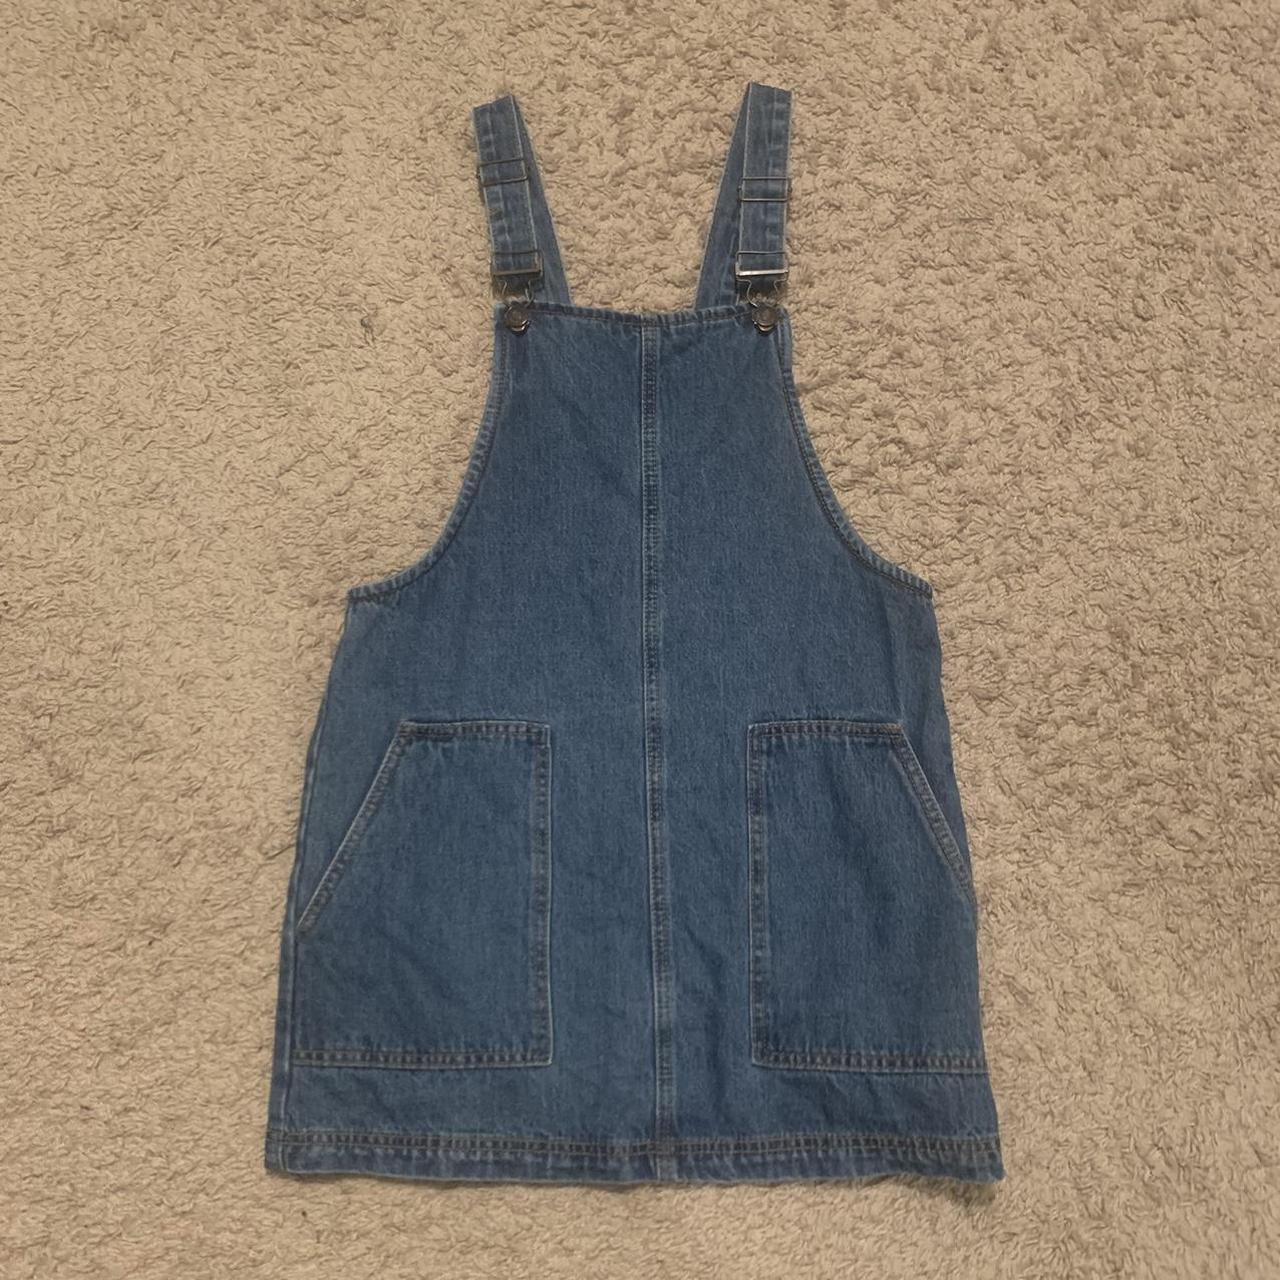 Forever 21 Jumper Dress Blue Denim Overall Dress Size Small S | eBay